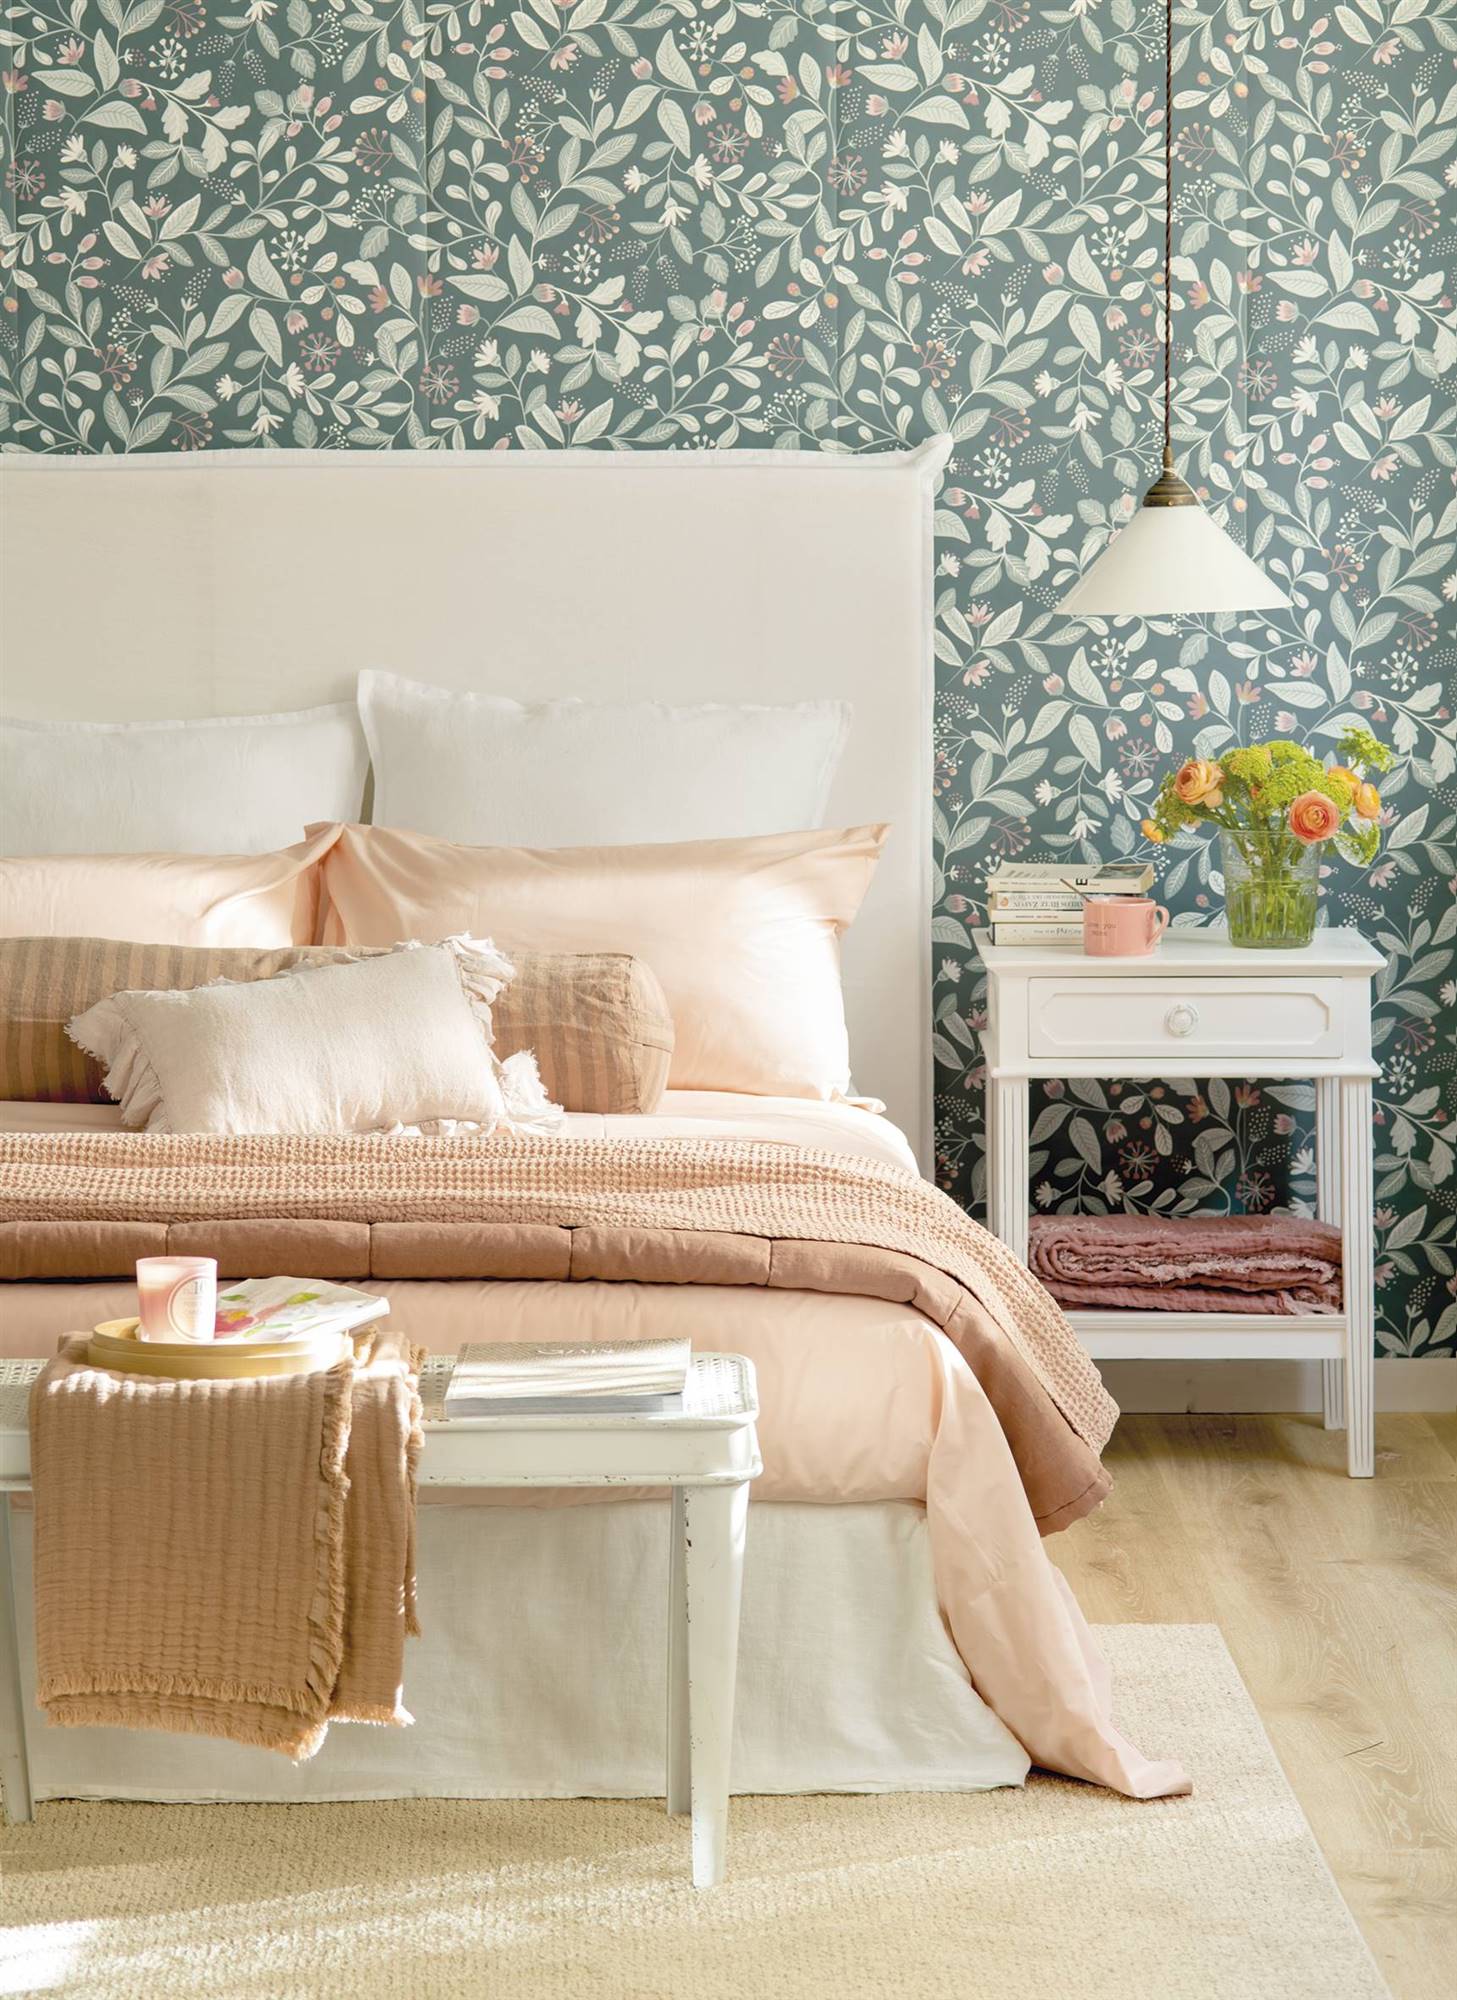 Dormitorio con cabecero de lino blanco y papel pintado con motivos botánicos.